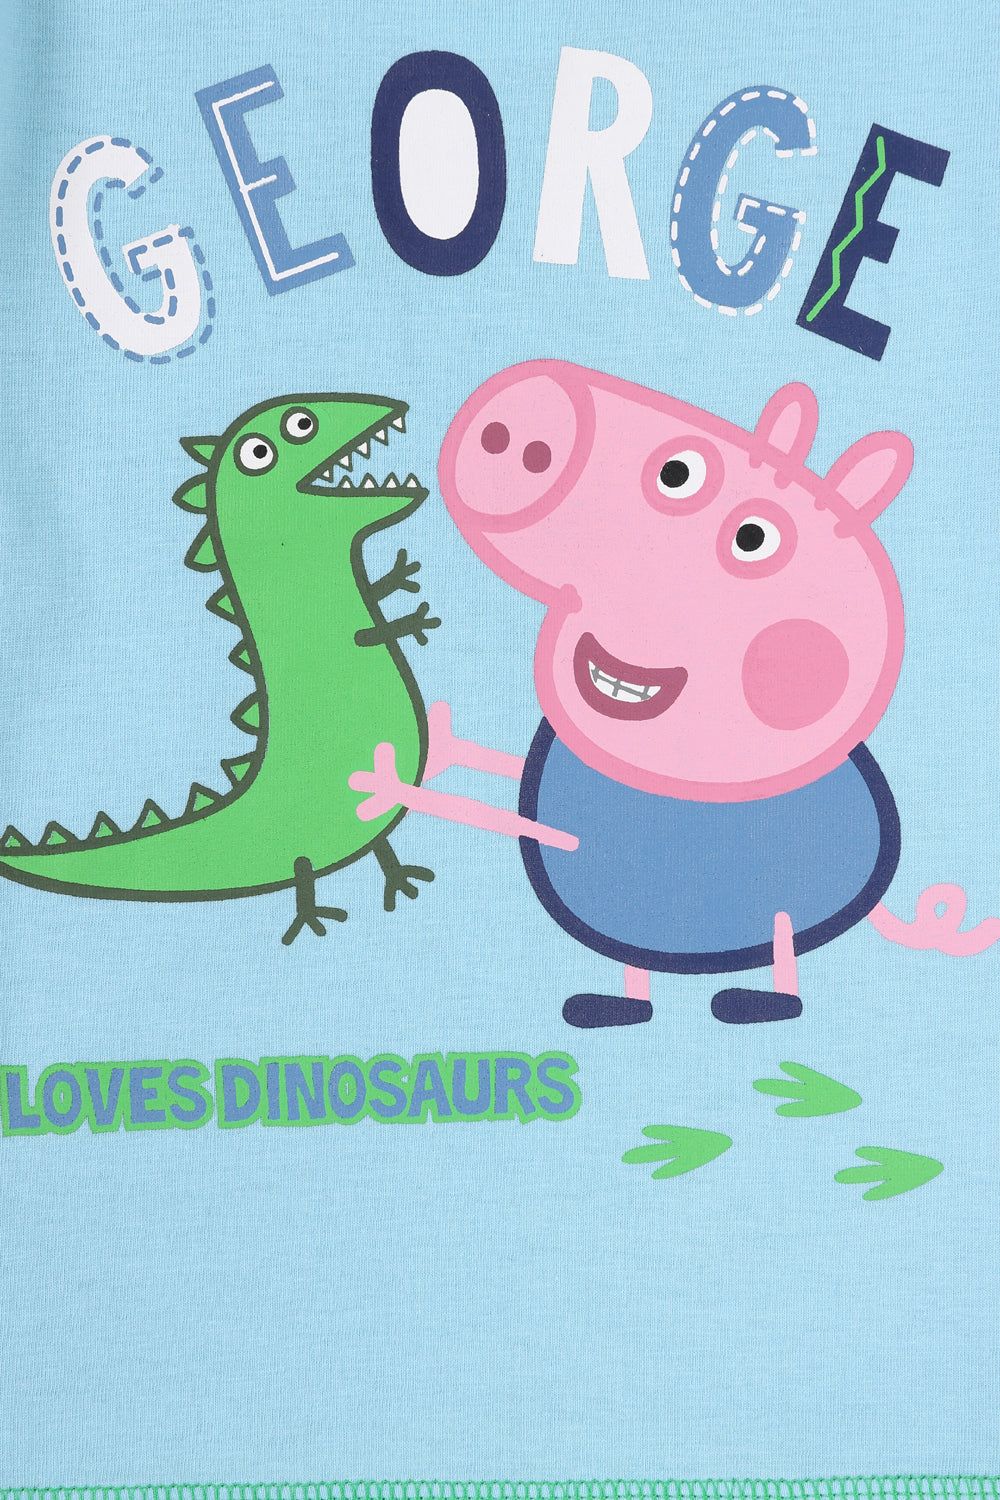 Boys Peppa Pig 'Loves Dinosaur's' Short George Pyjamas - Pyjamas.com